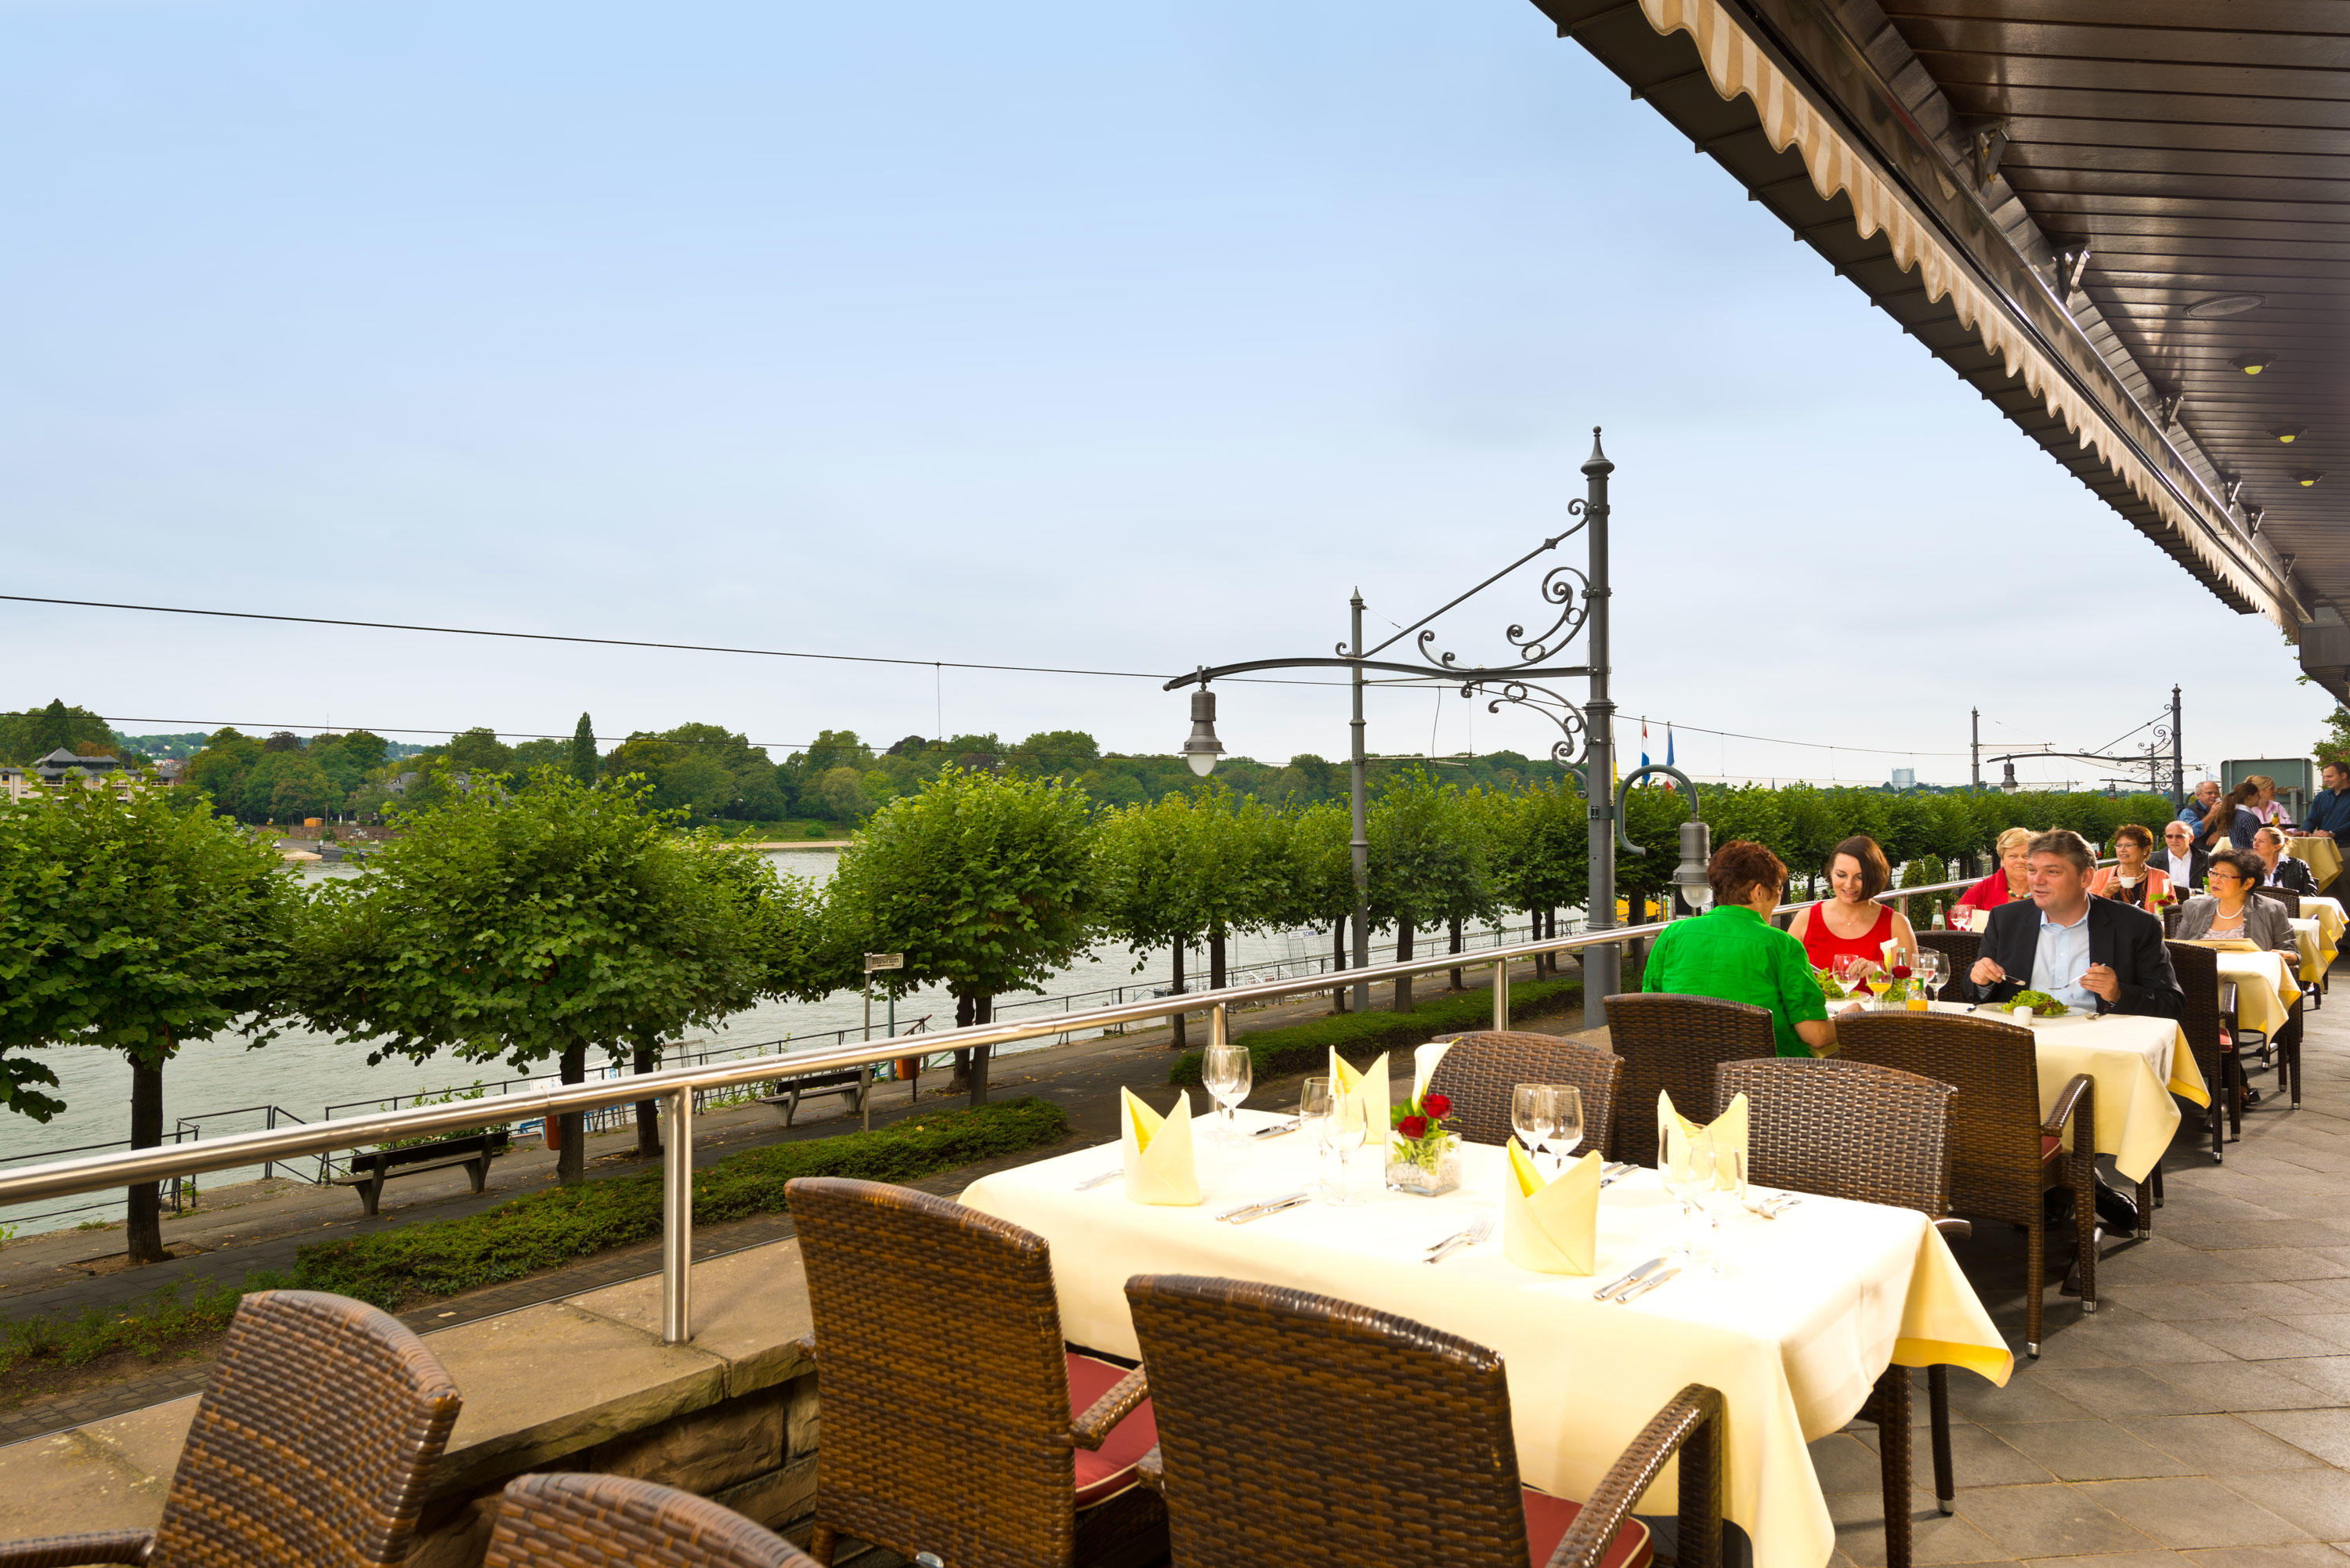 Restaurant "Rheinterrassen" mit Sommerterrasse